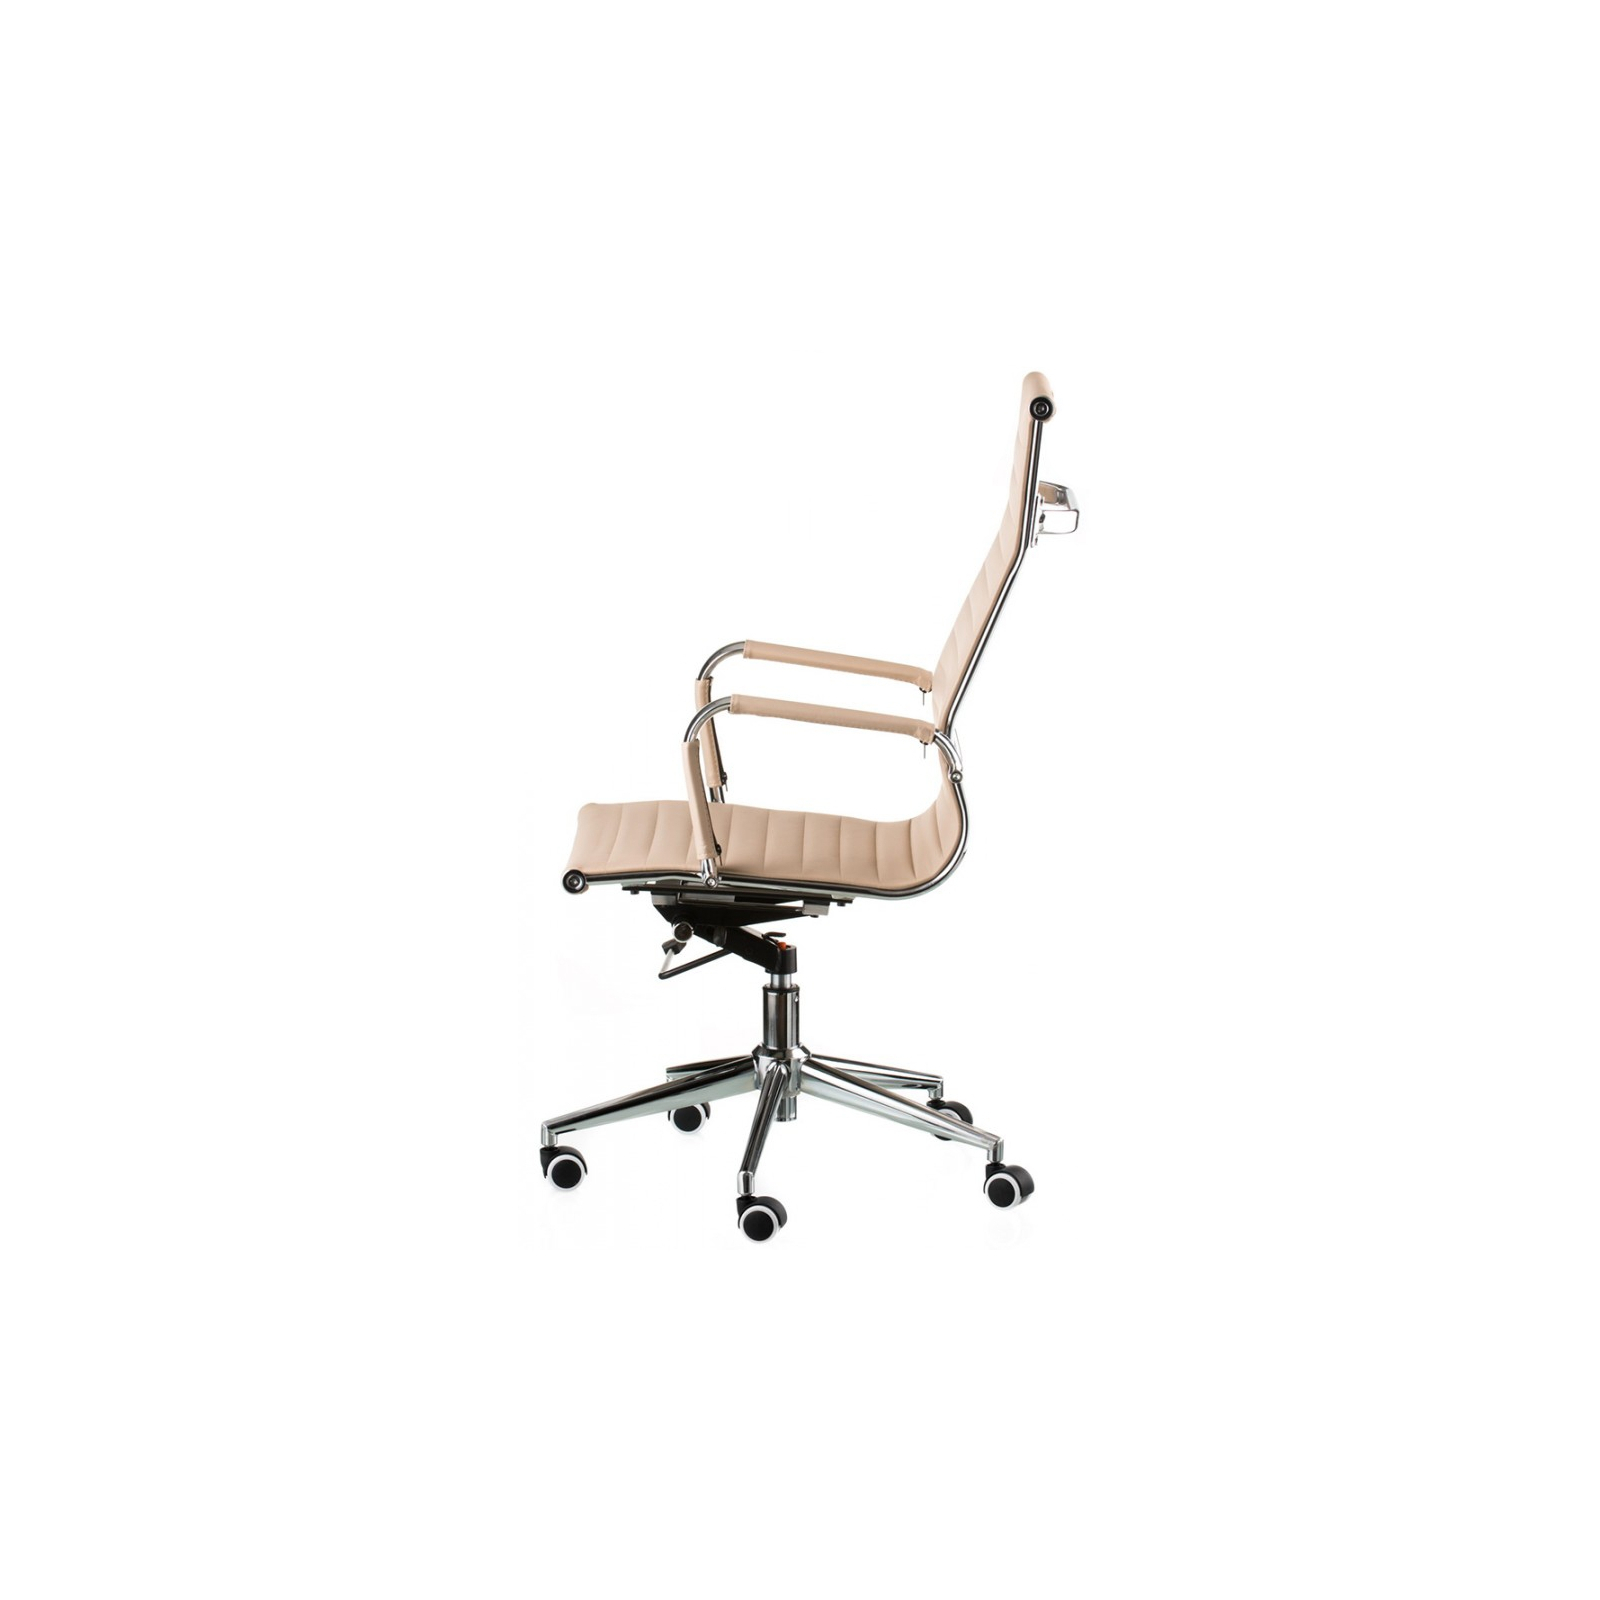 Офисное кресло Special4You Solano artleather beige (000002573) изображение 4